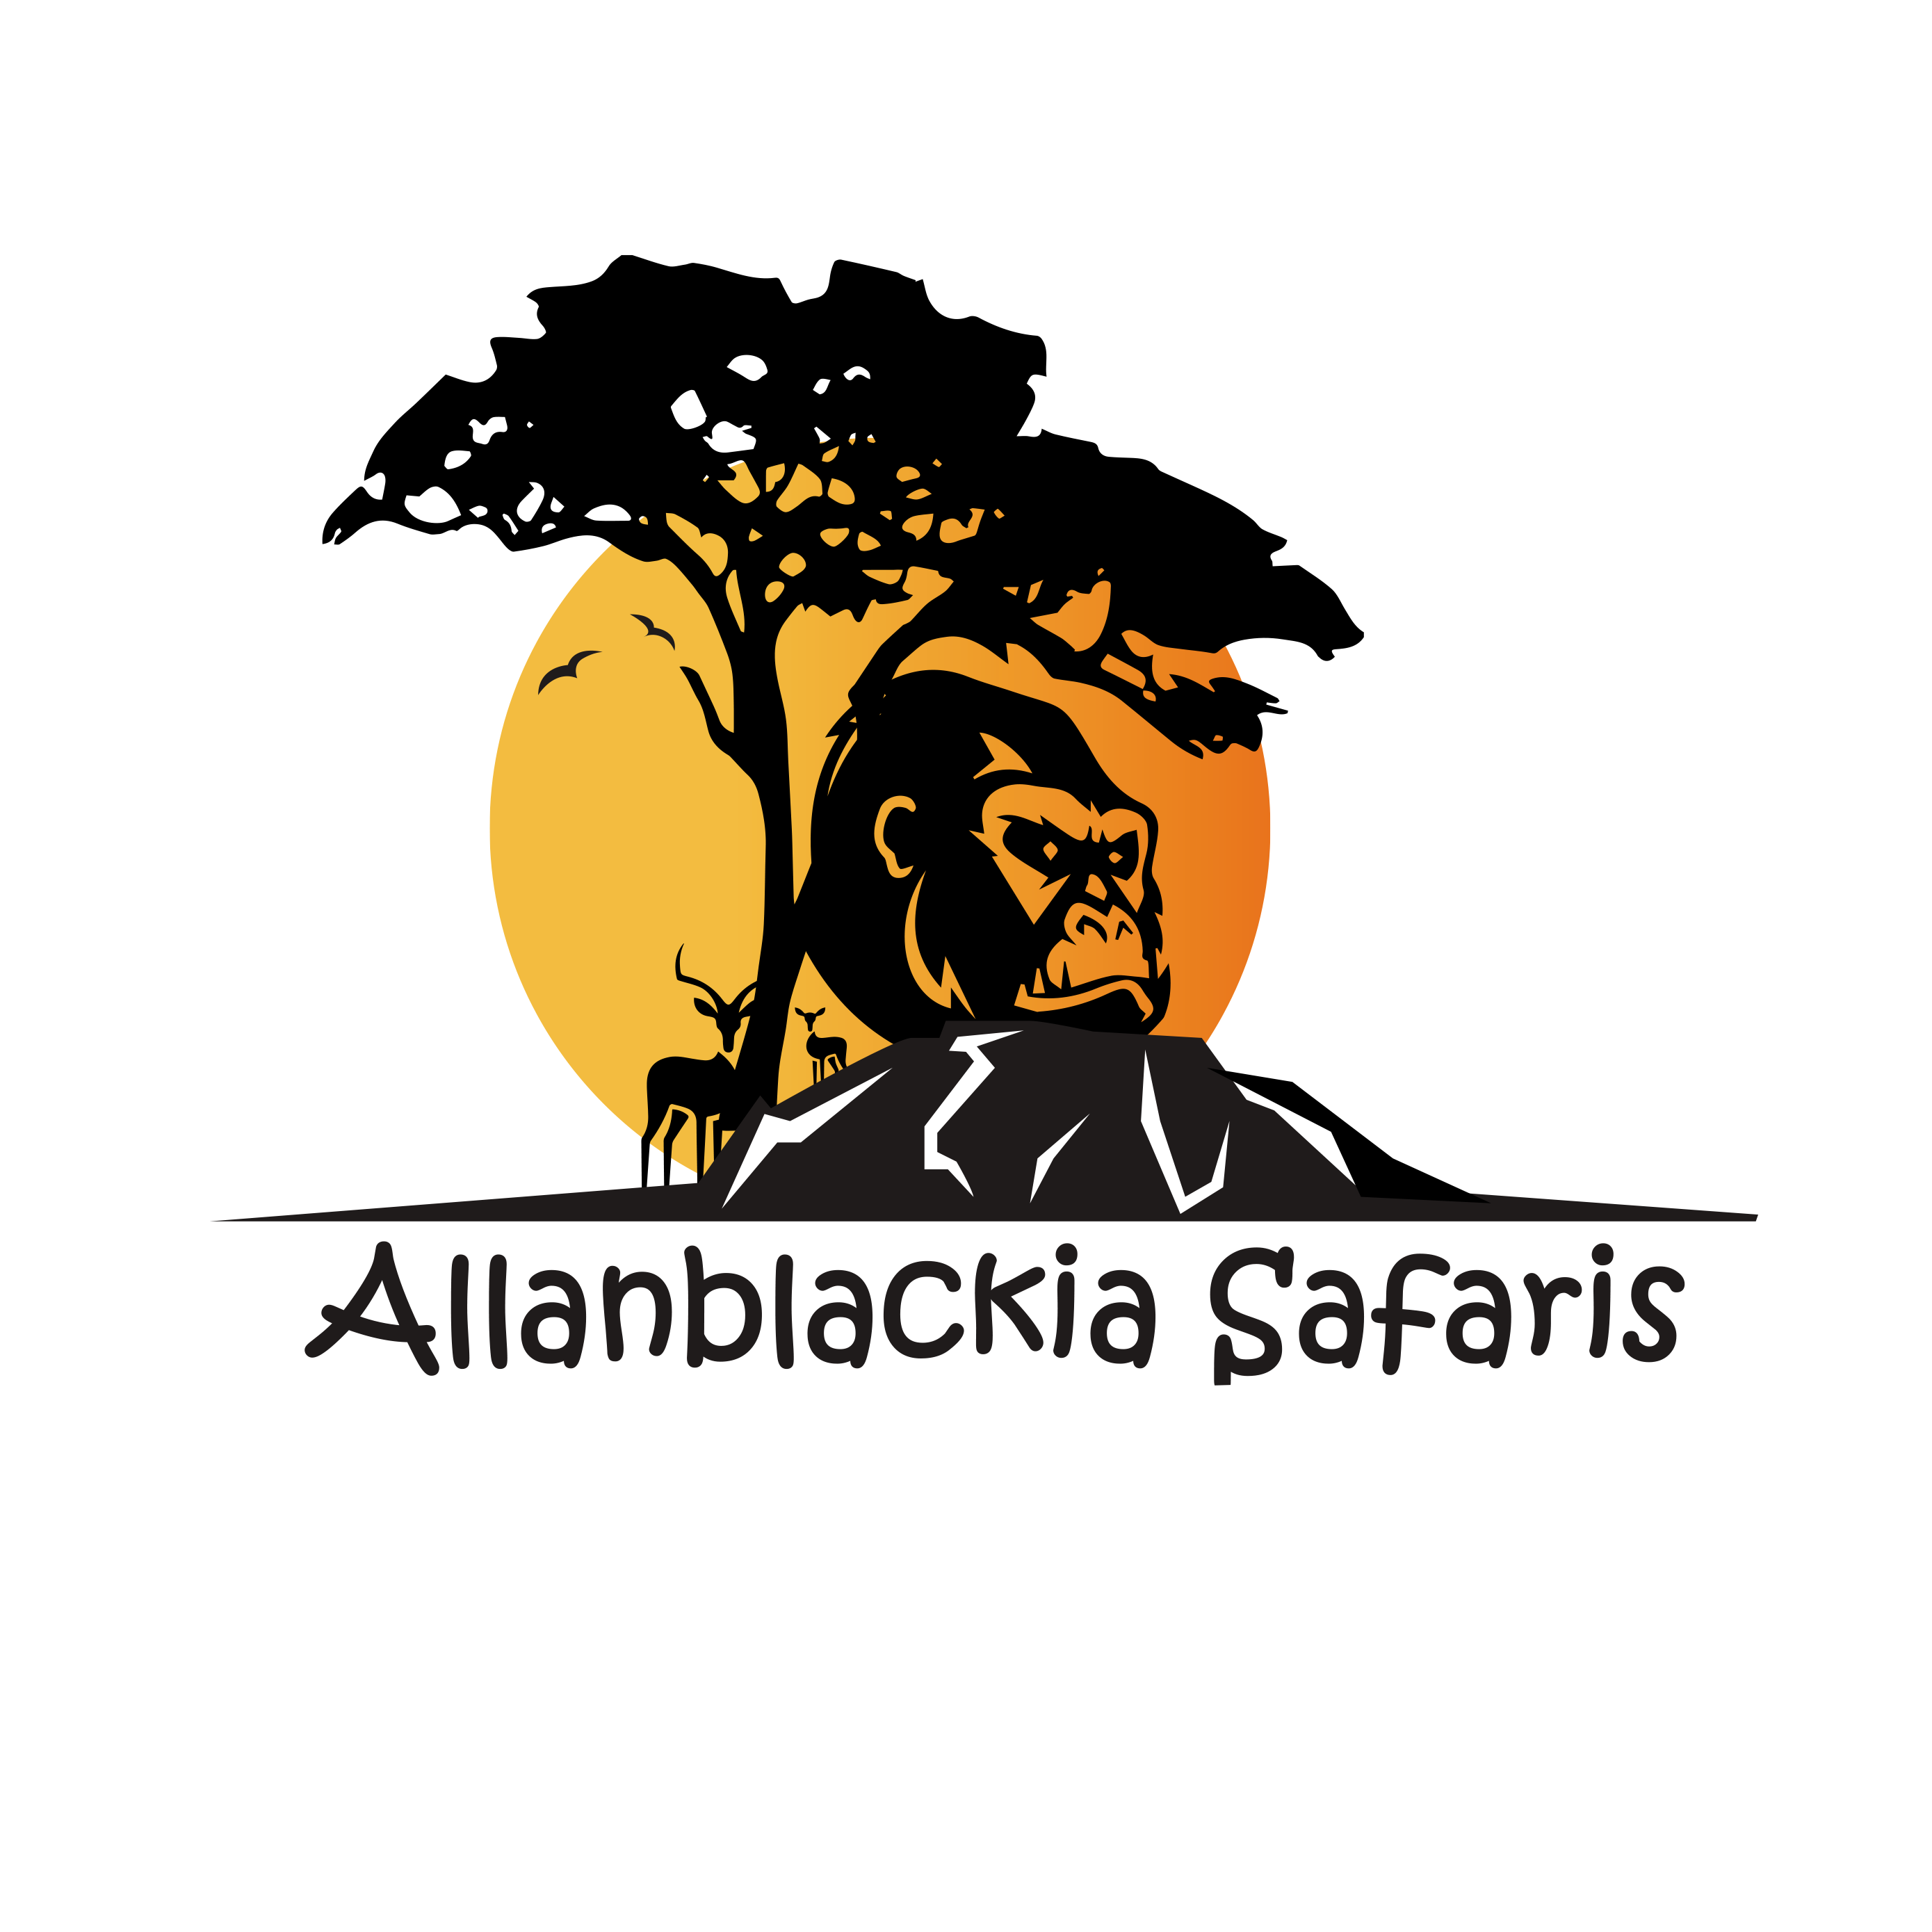 Allan Blackia Safaris